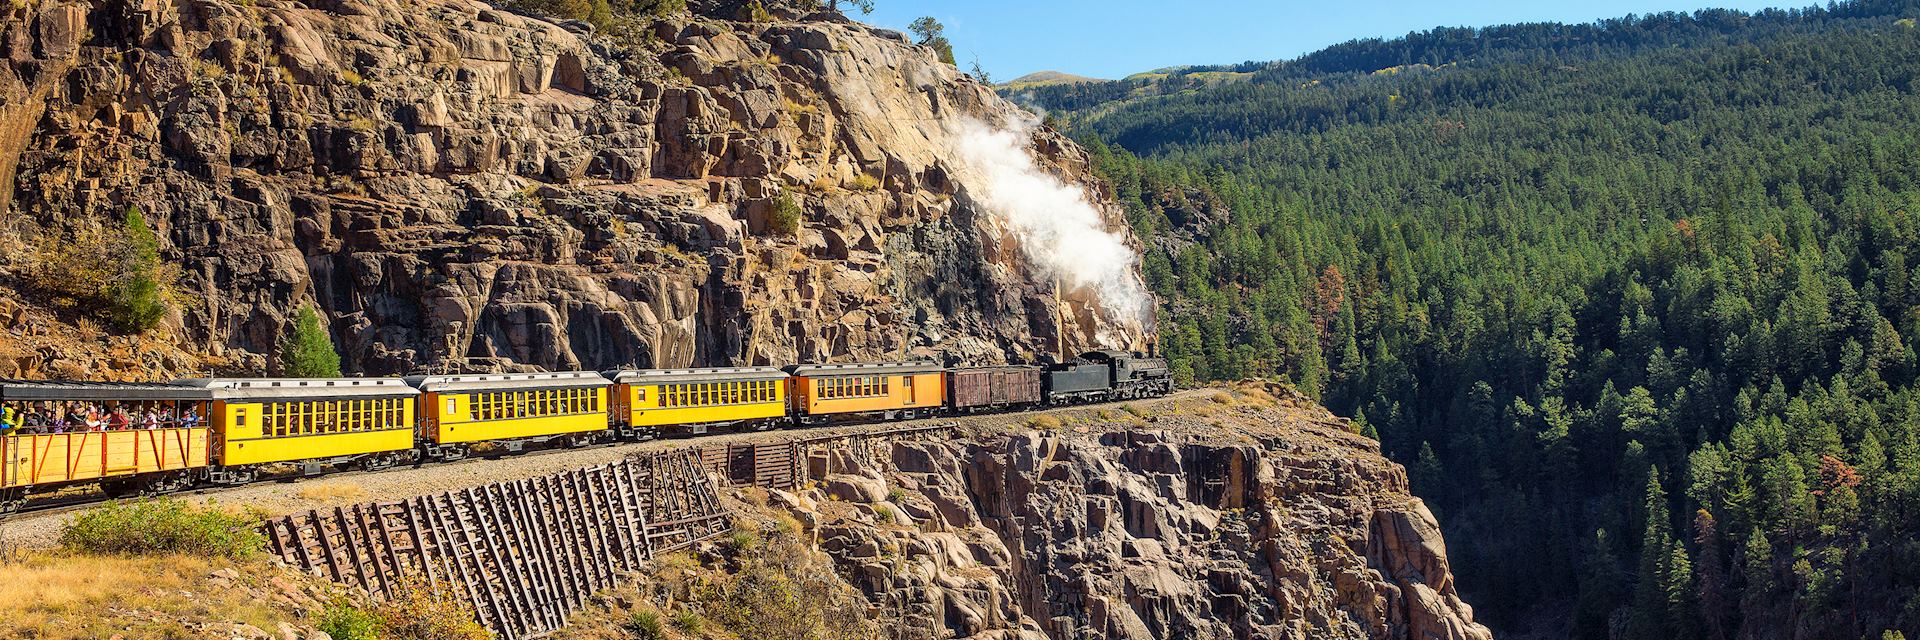 Durango and Silverton historic steam train, Colorado